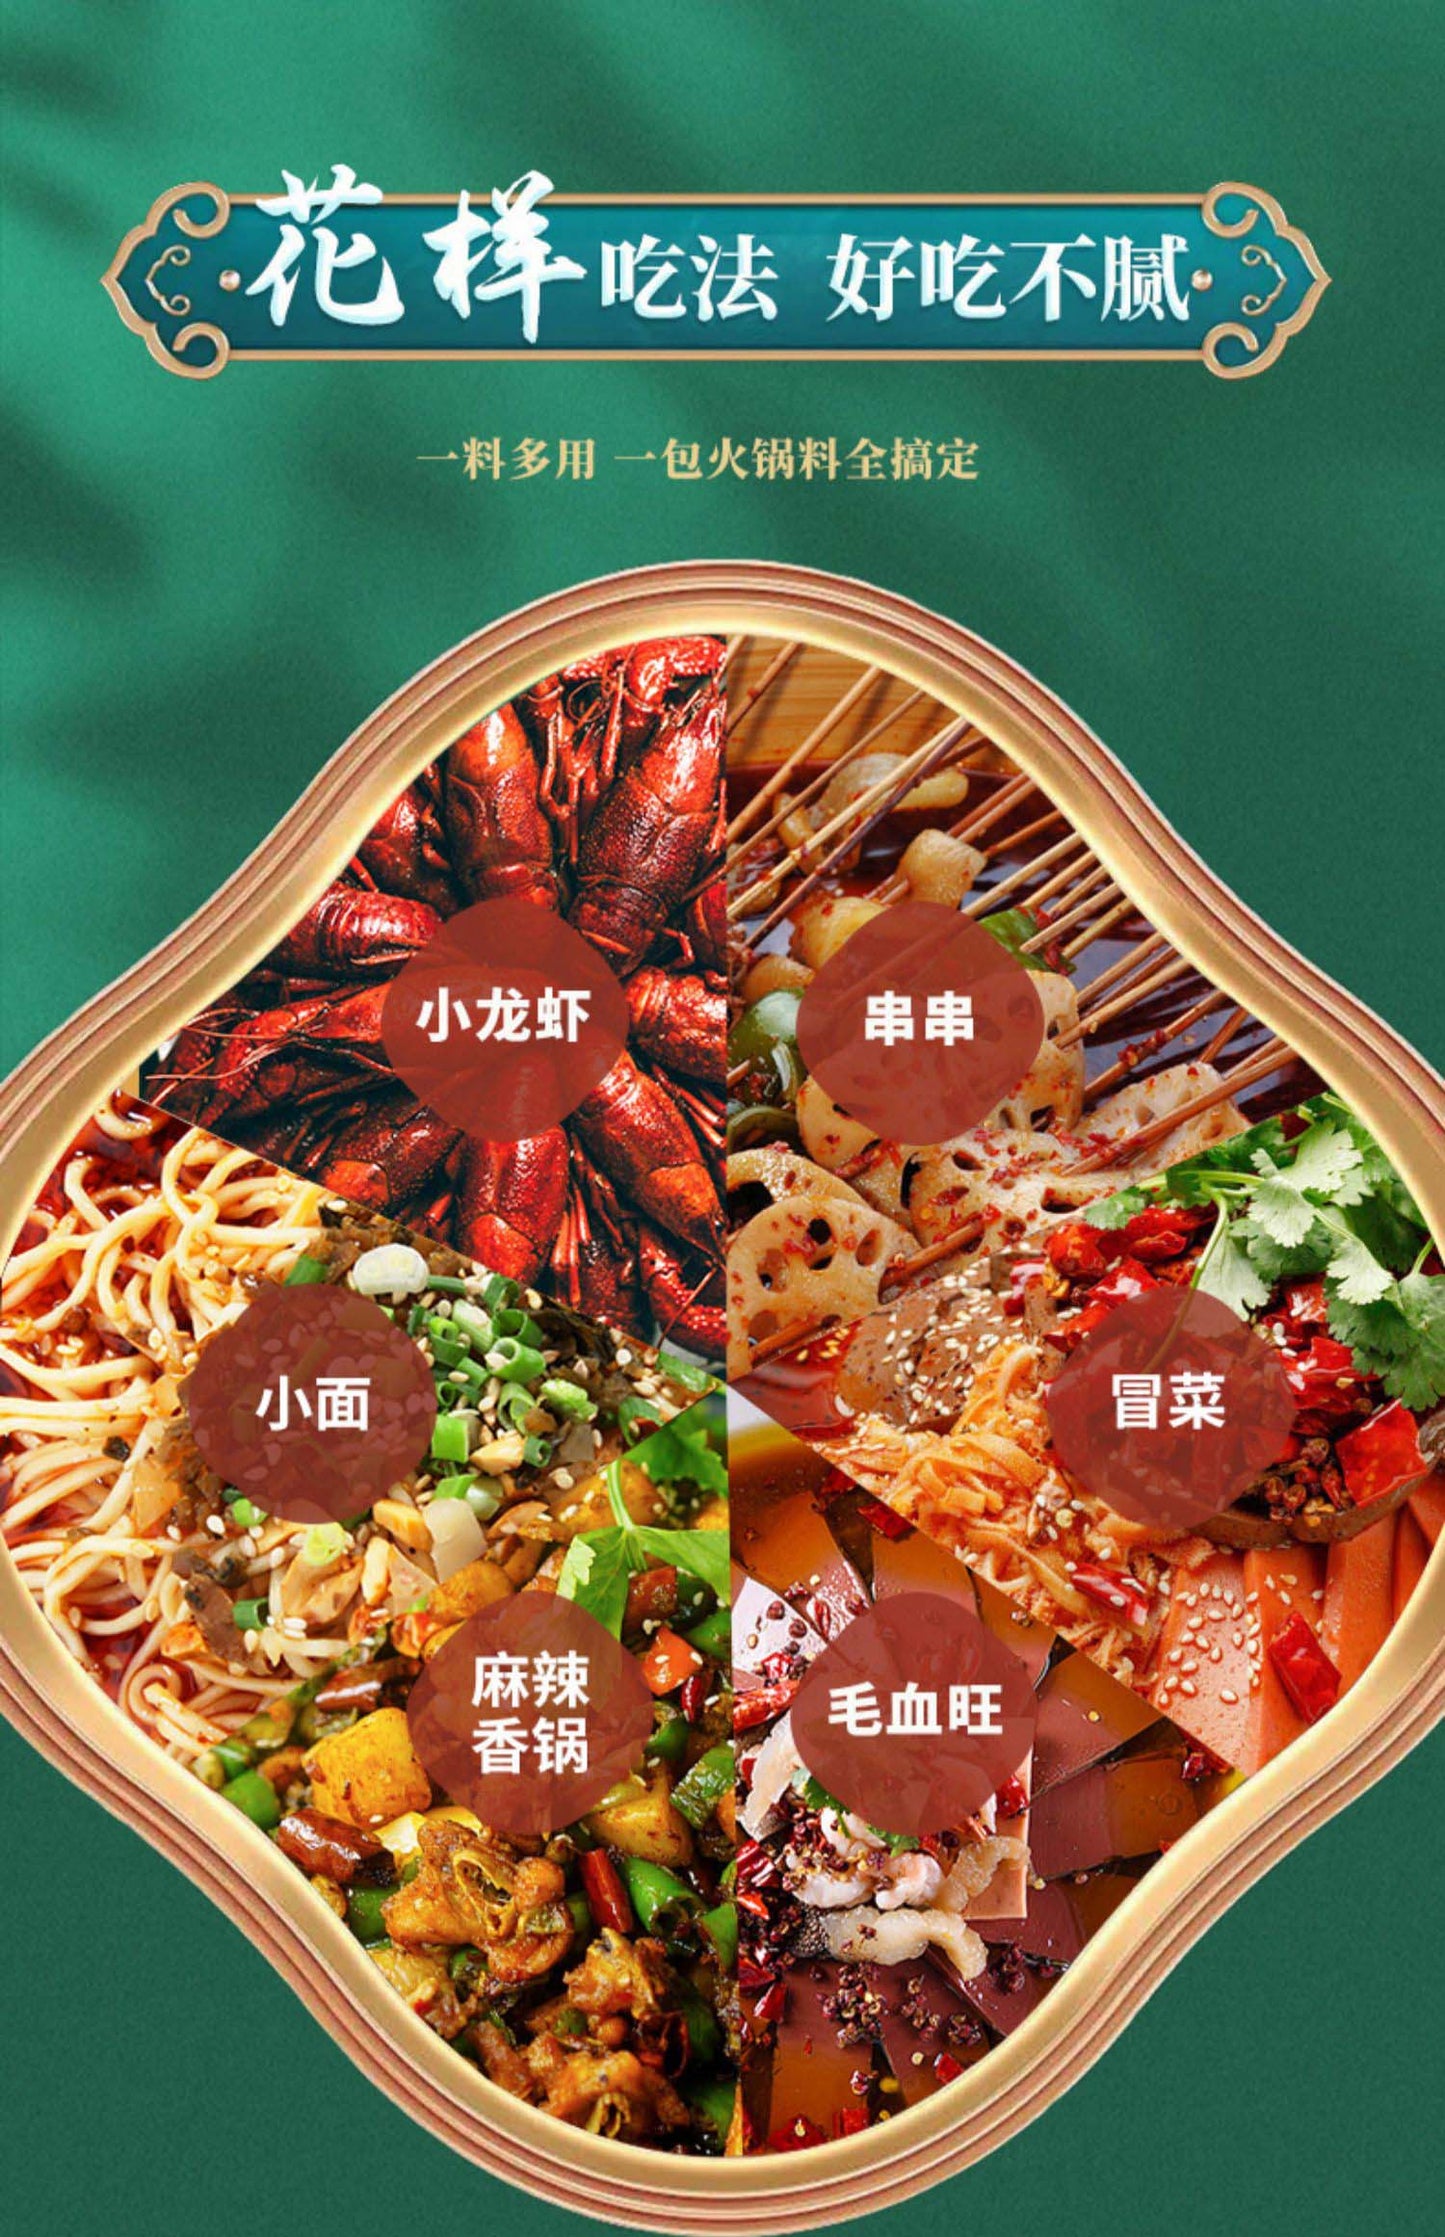 Qiaotou - Chongqing Spicy Hot Pot Base 160g